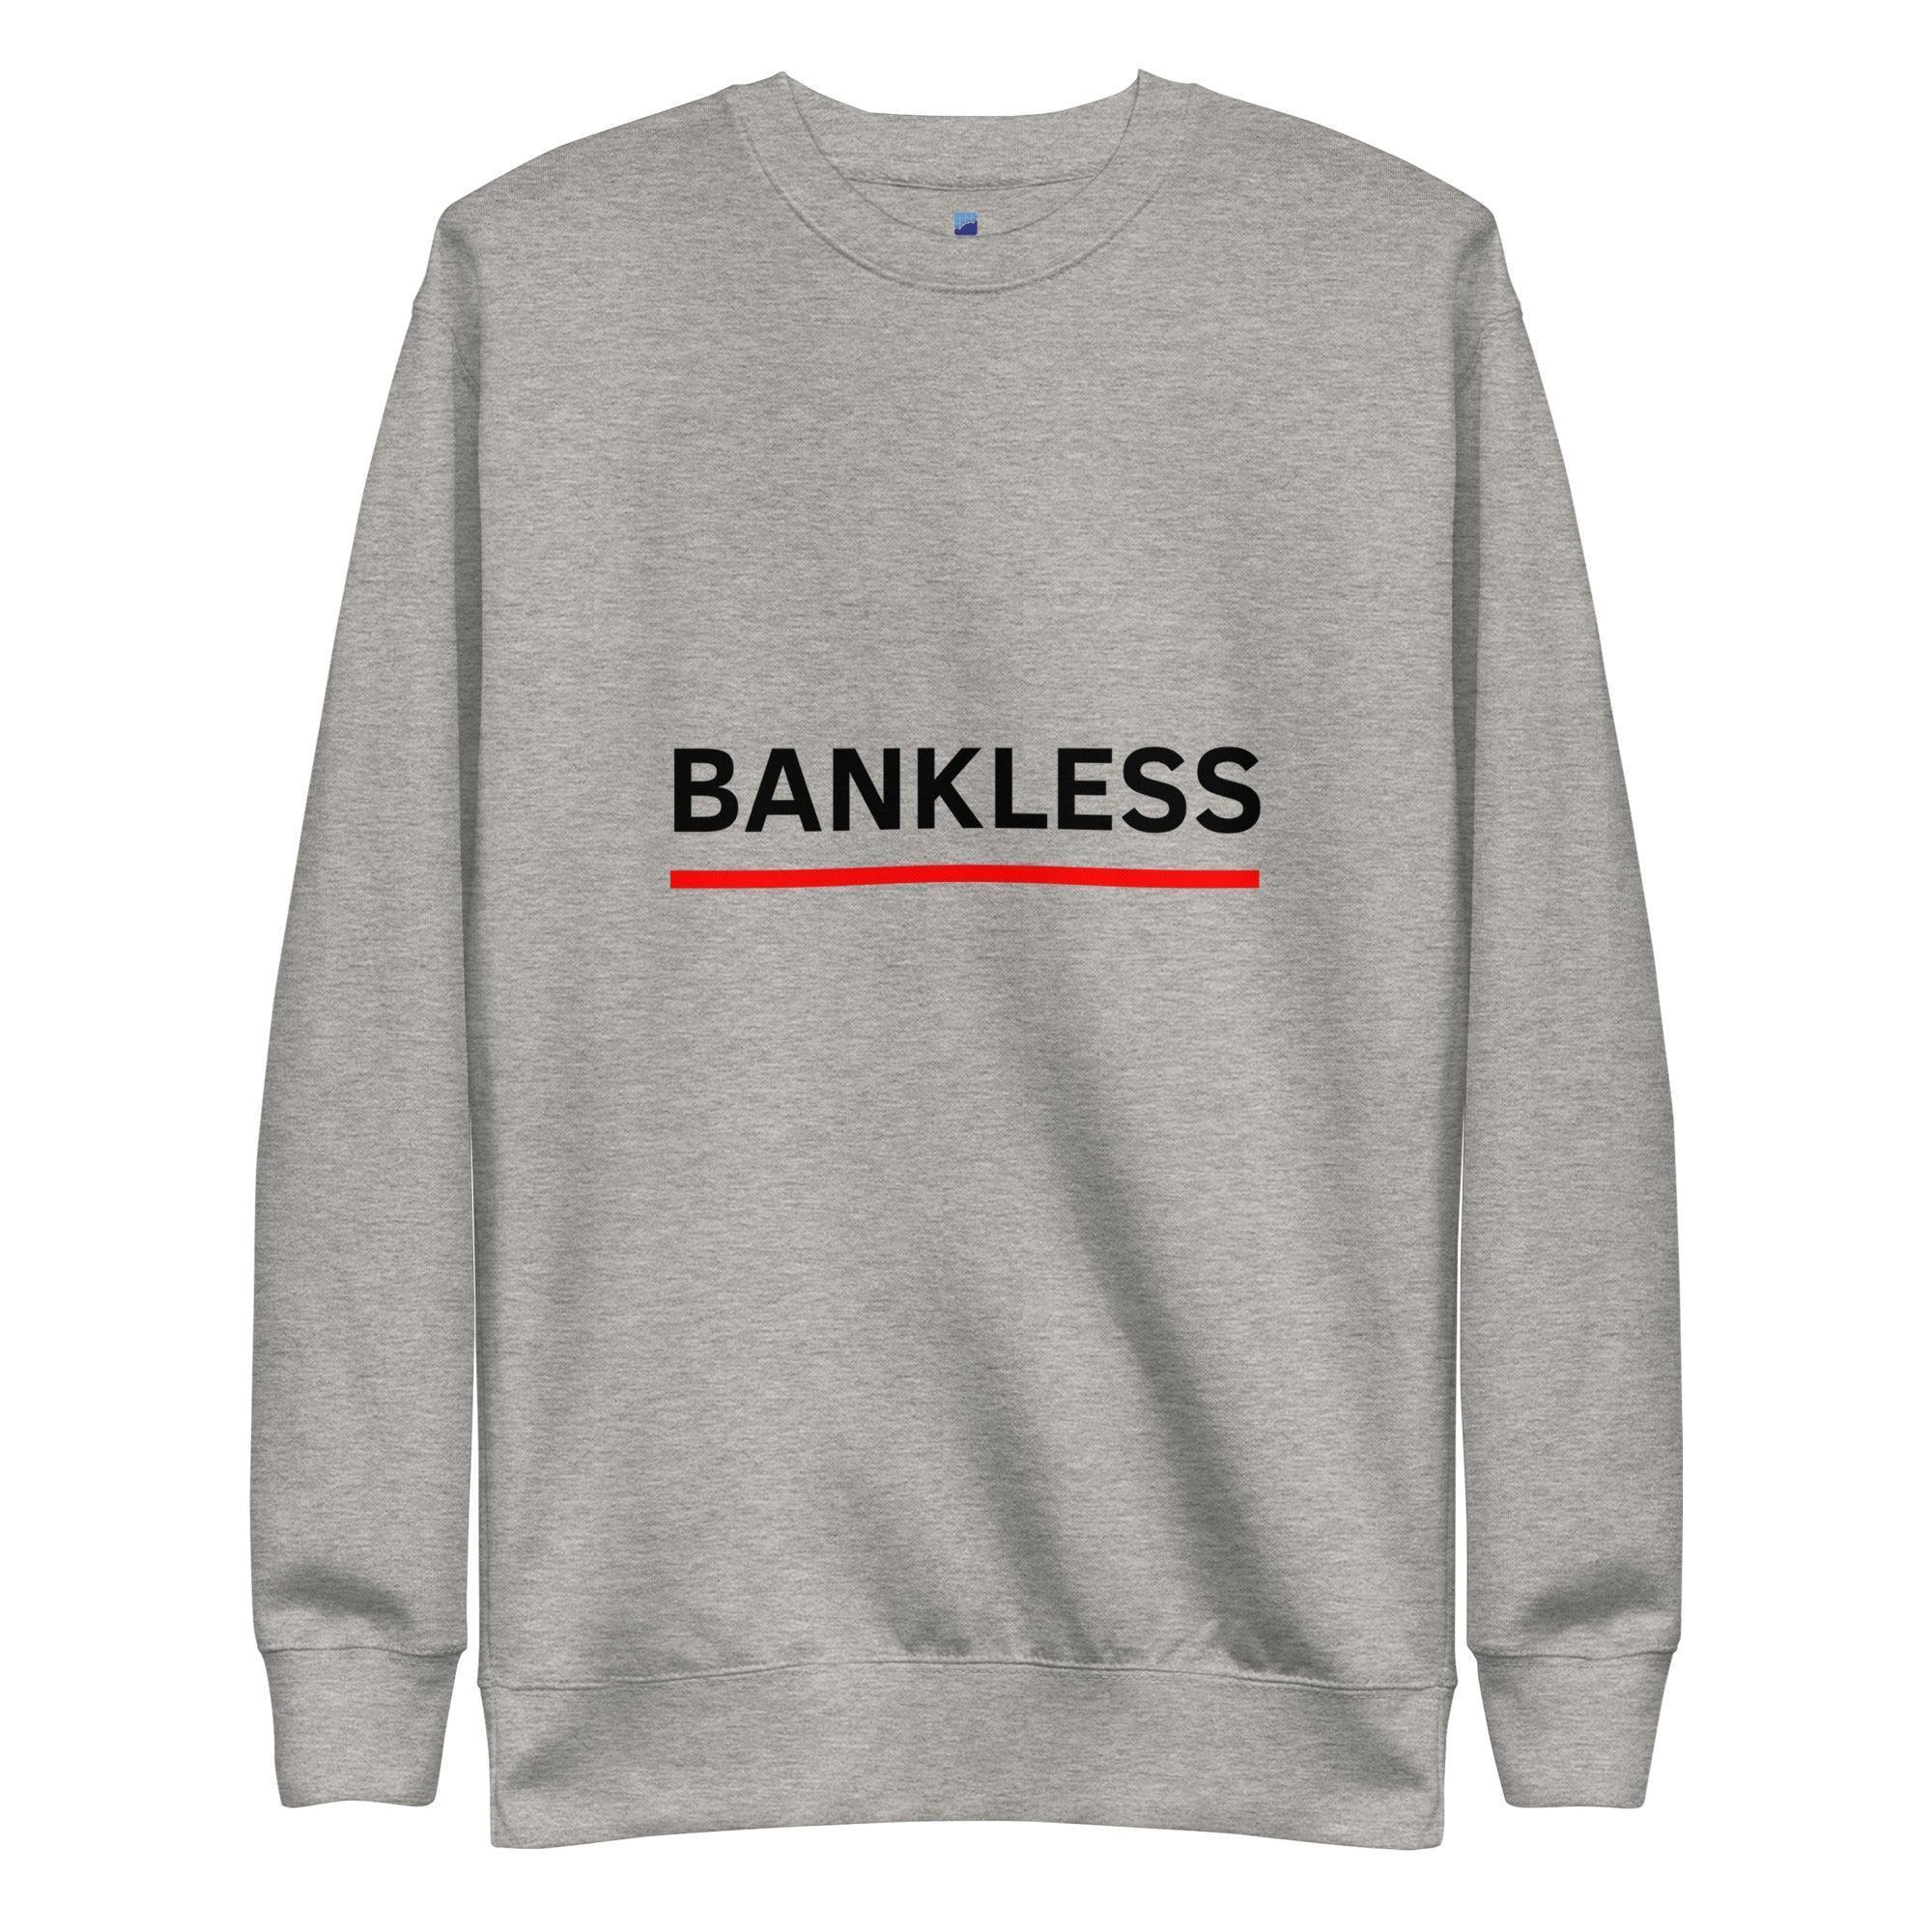 Bankless Sweatshirt - InvestmenTees